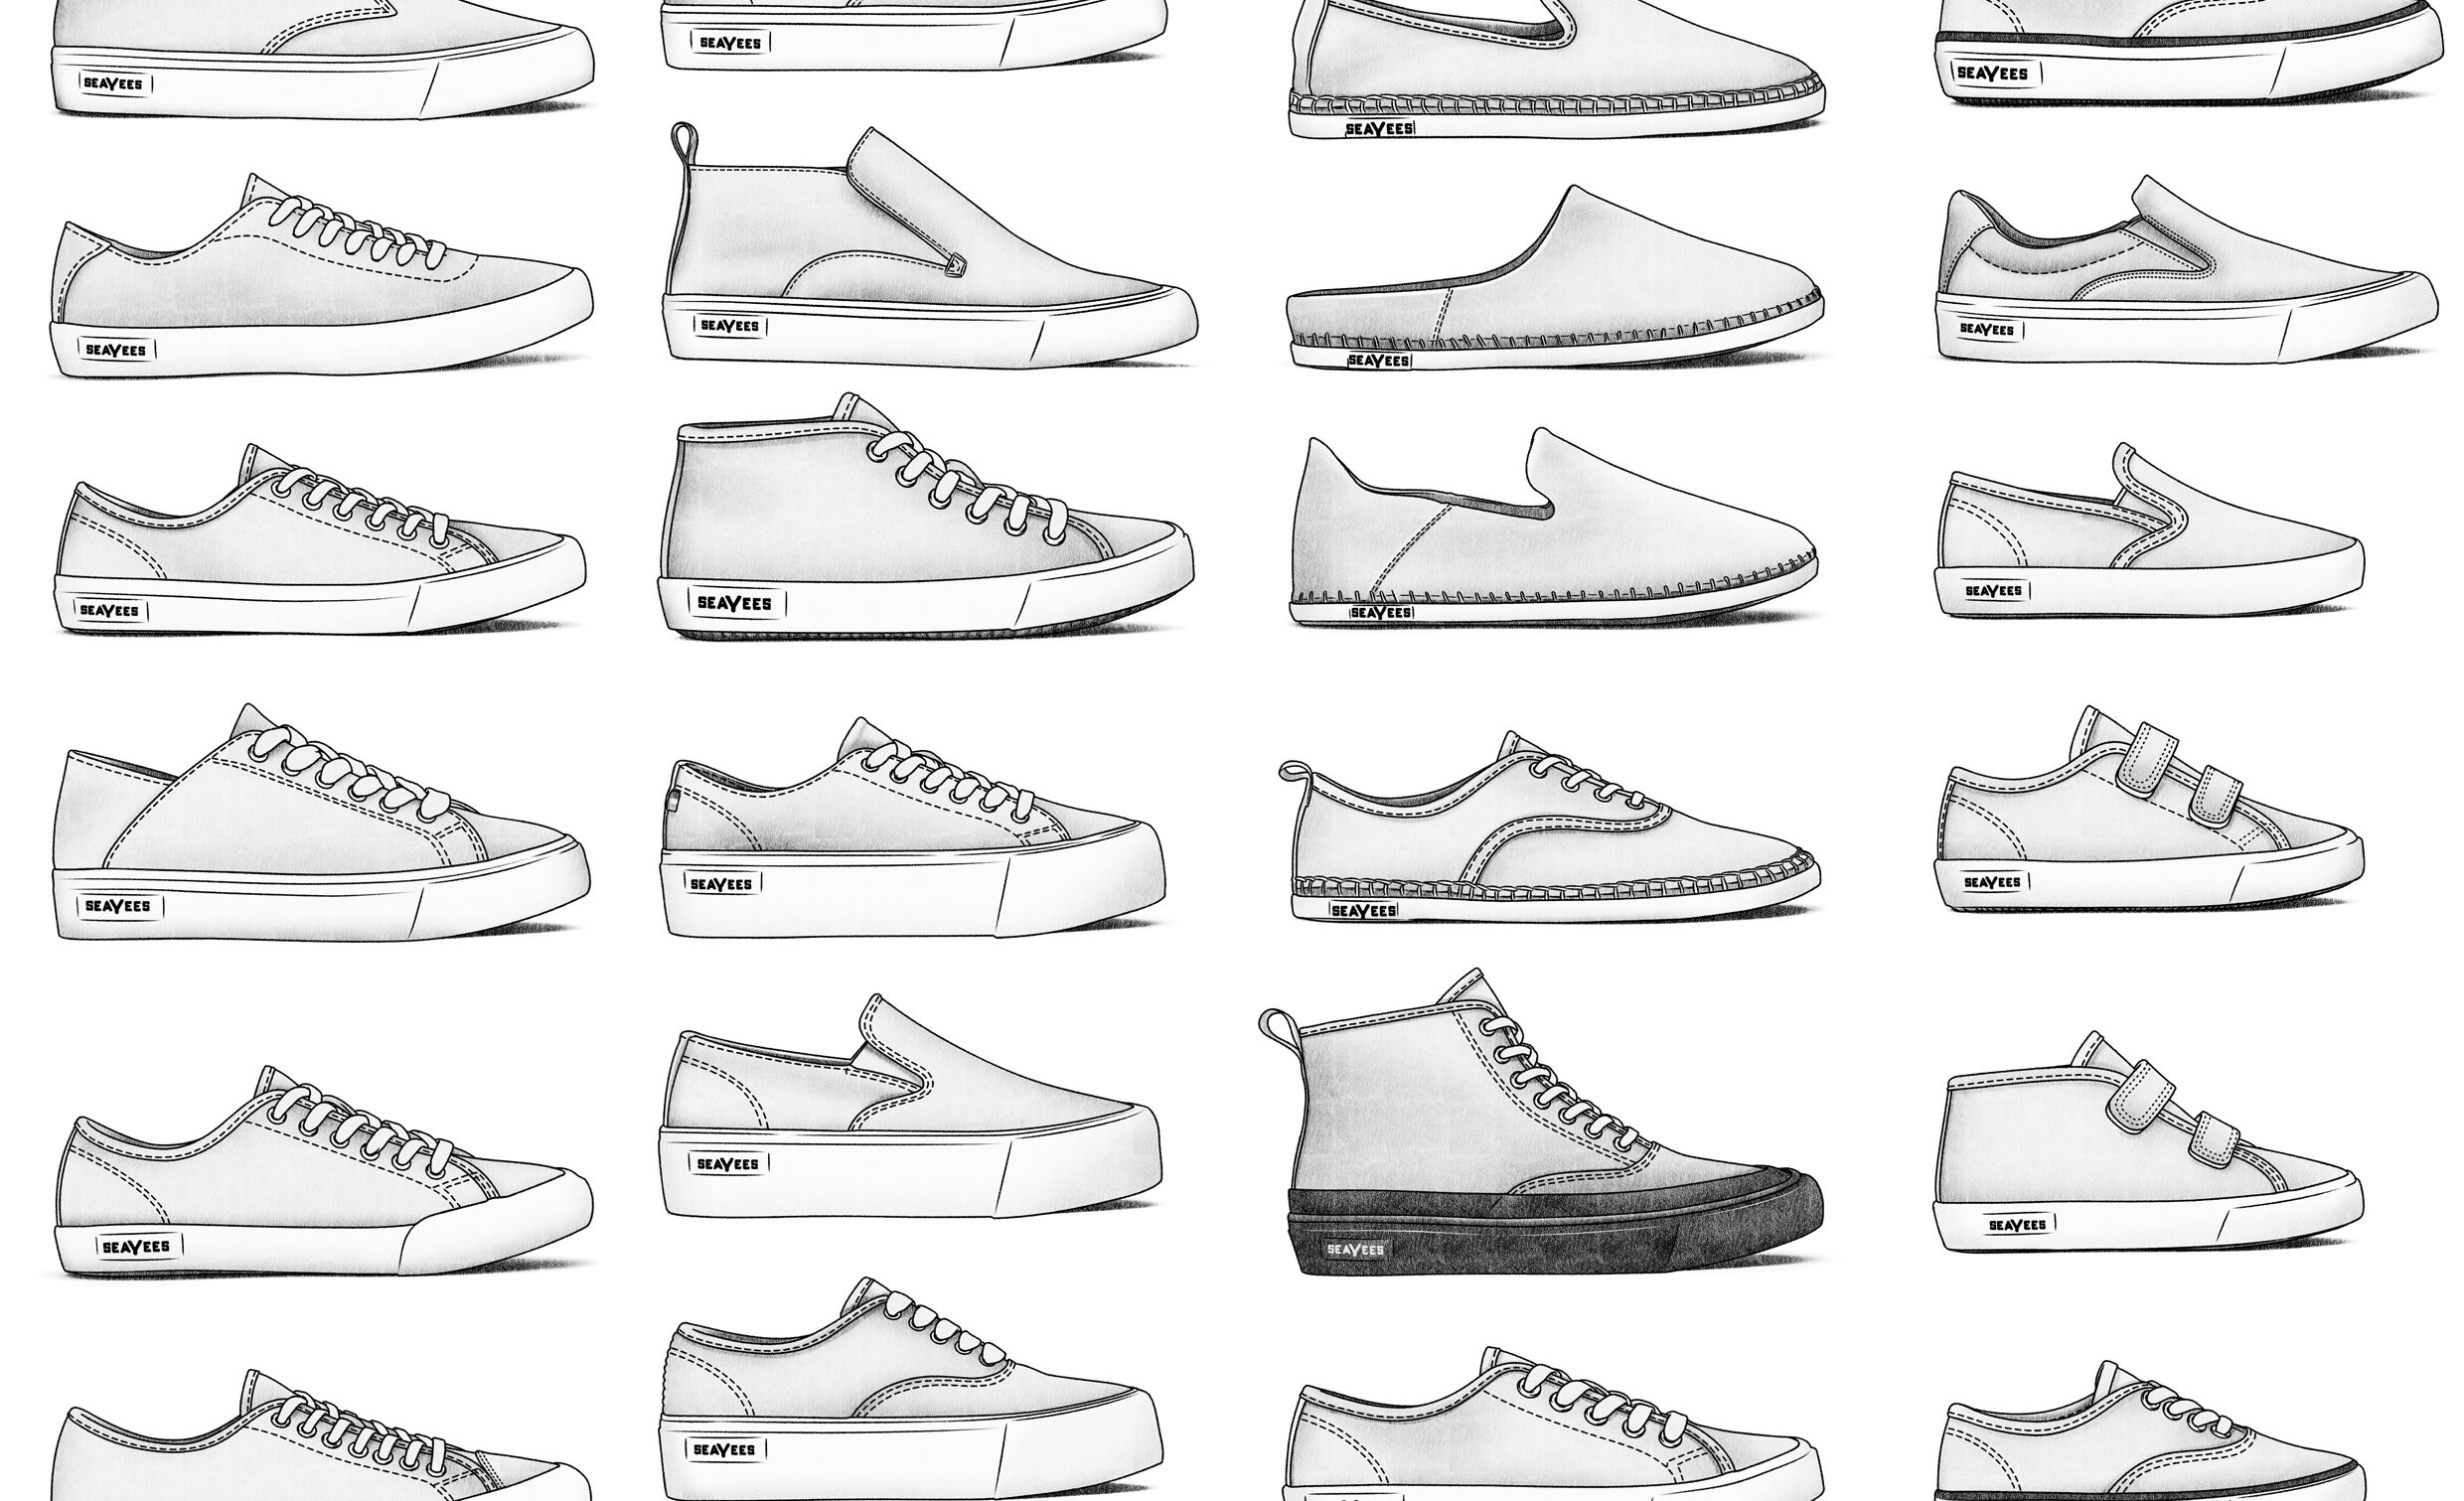 shoes skor informativ produkt infografik beskrivande mode kläder